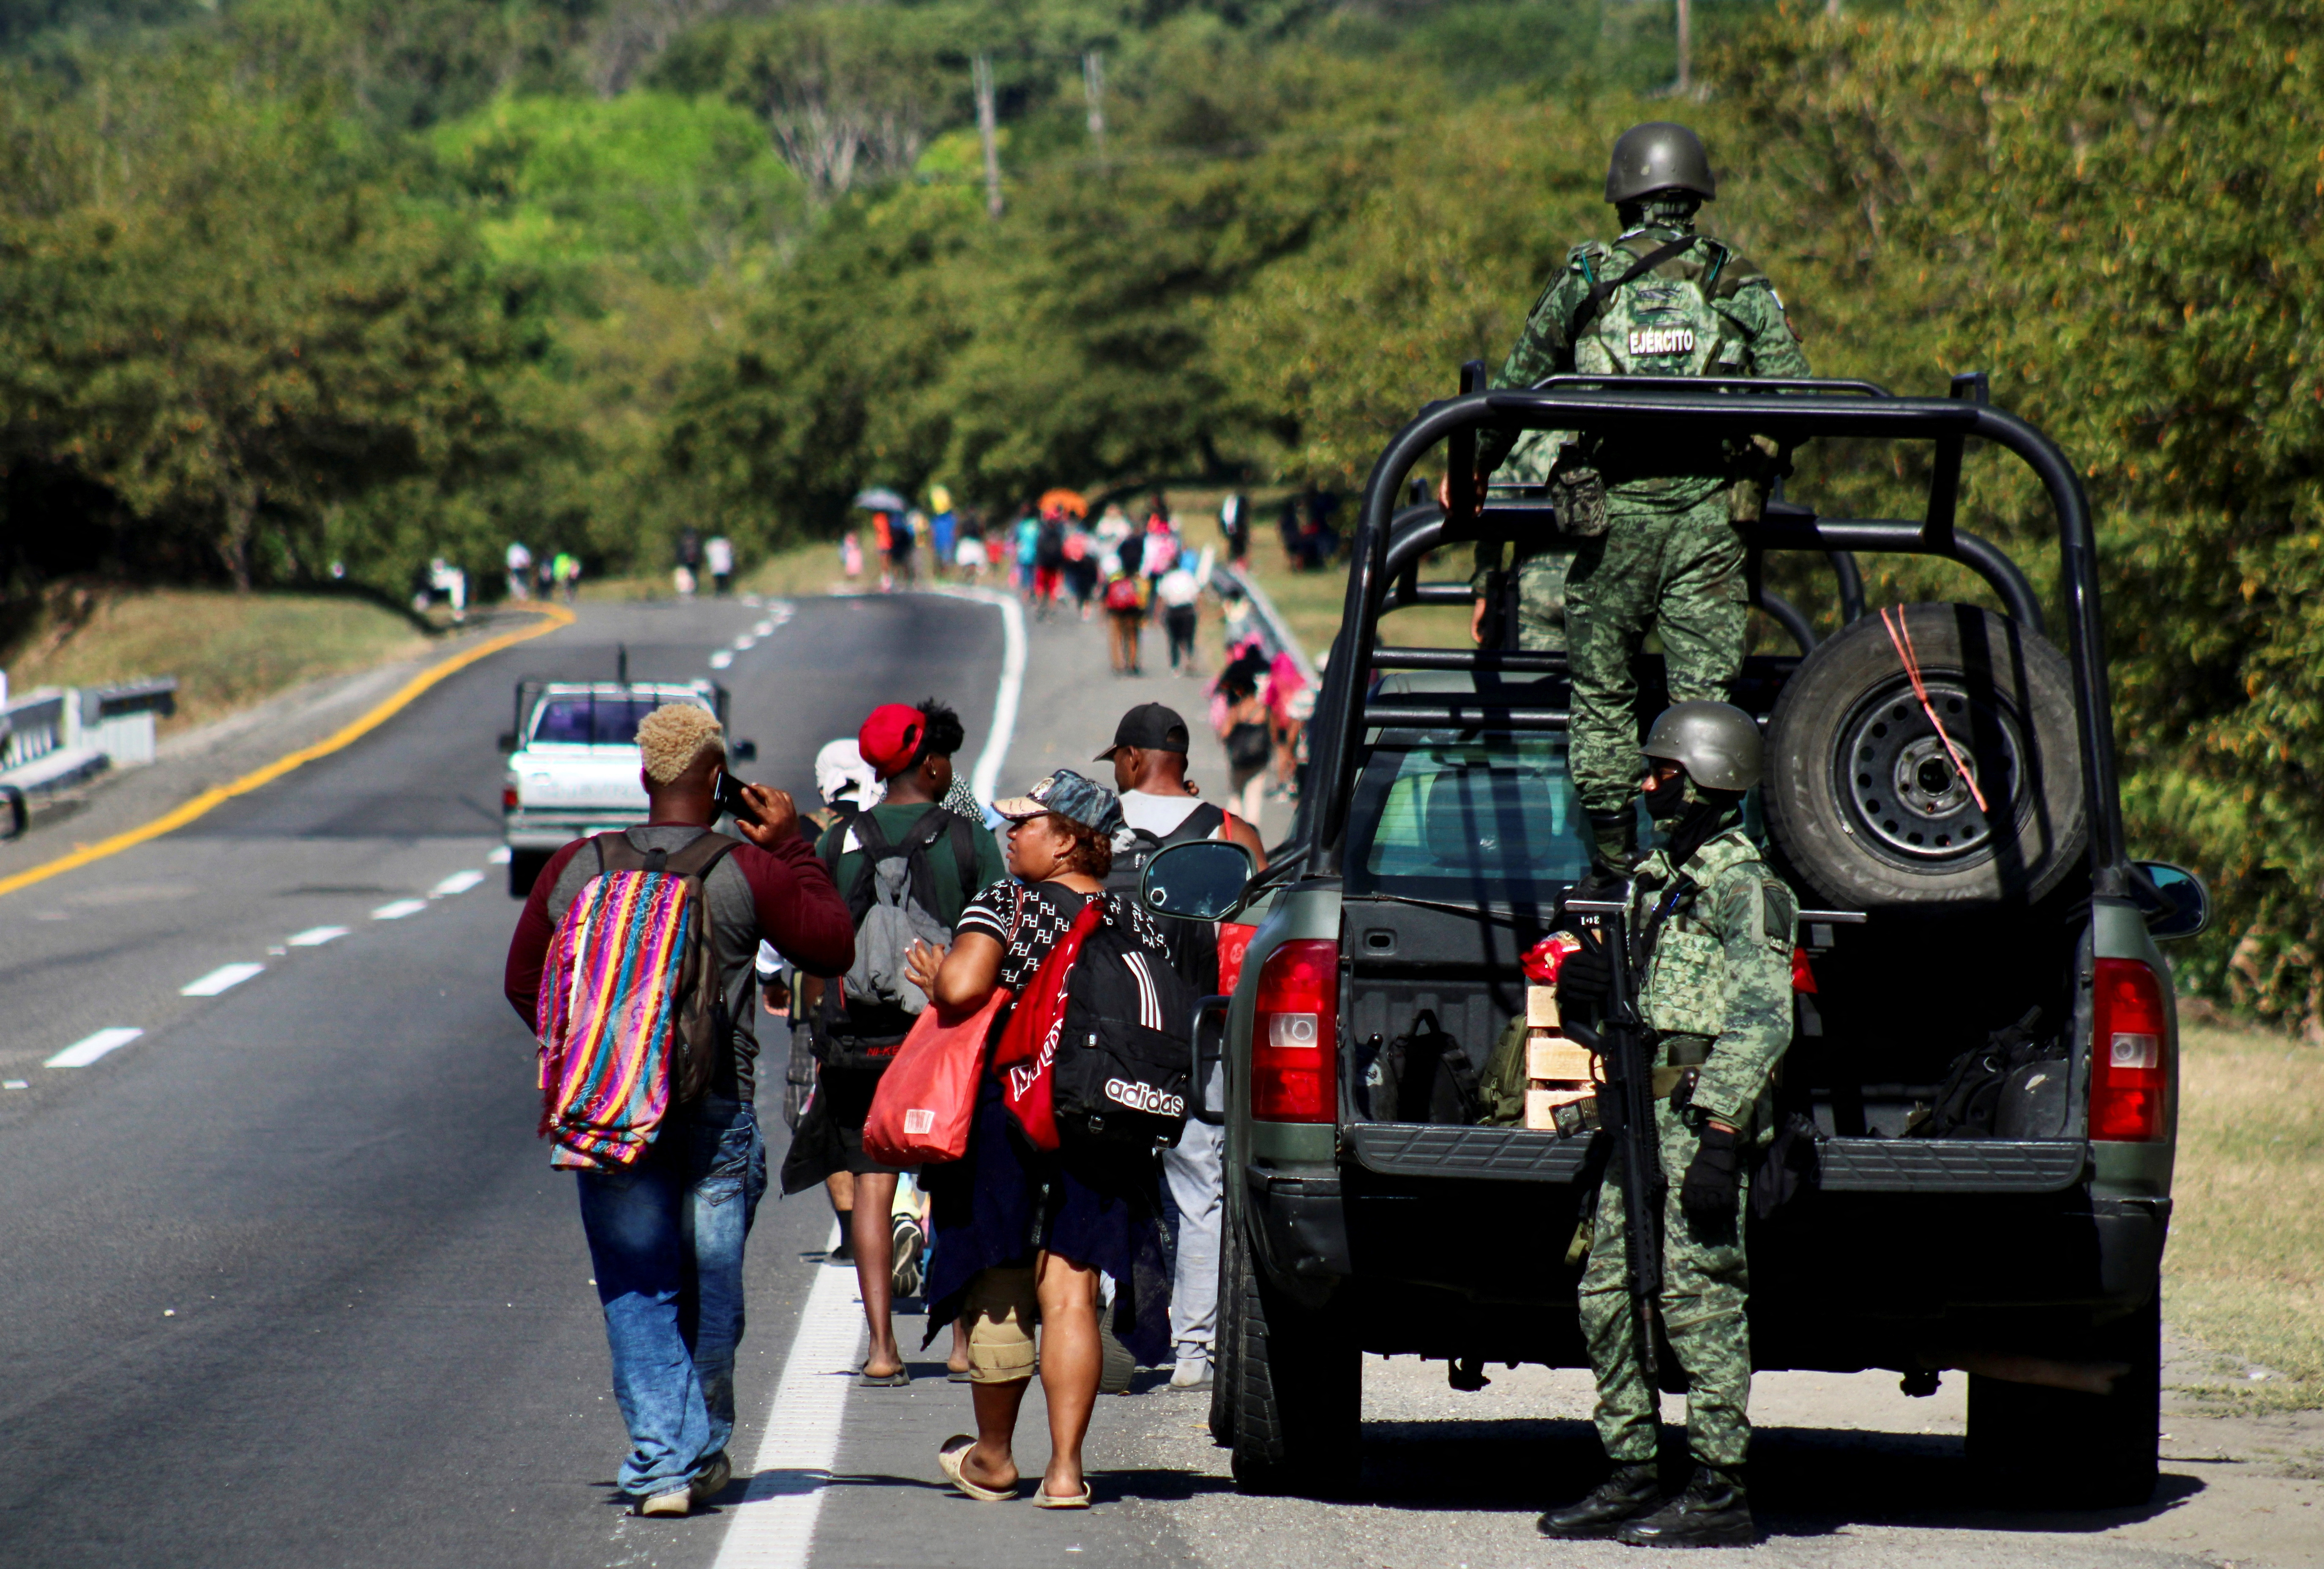 Migrants walk in a caravan to reach the U.S. border through Mexico, in Escuintla